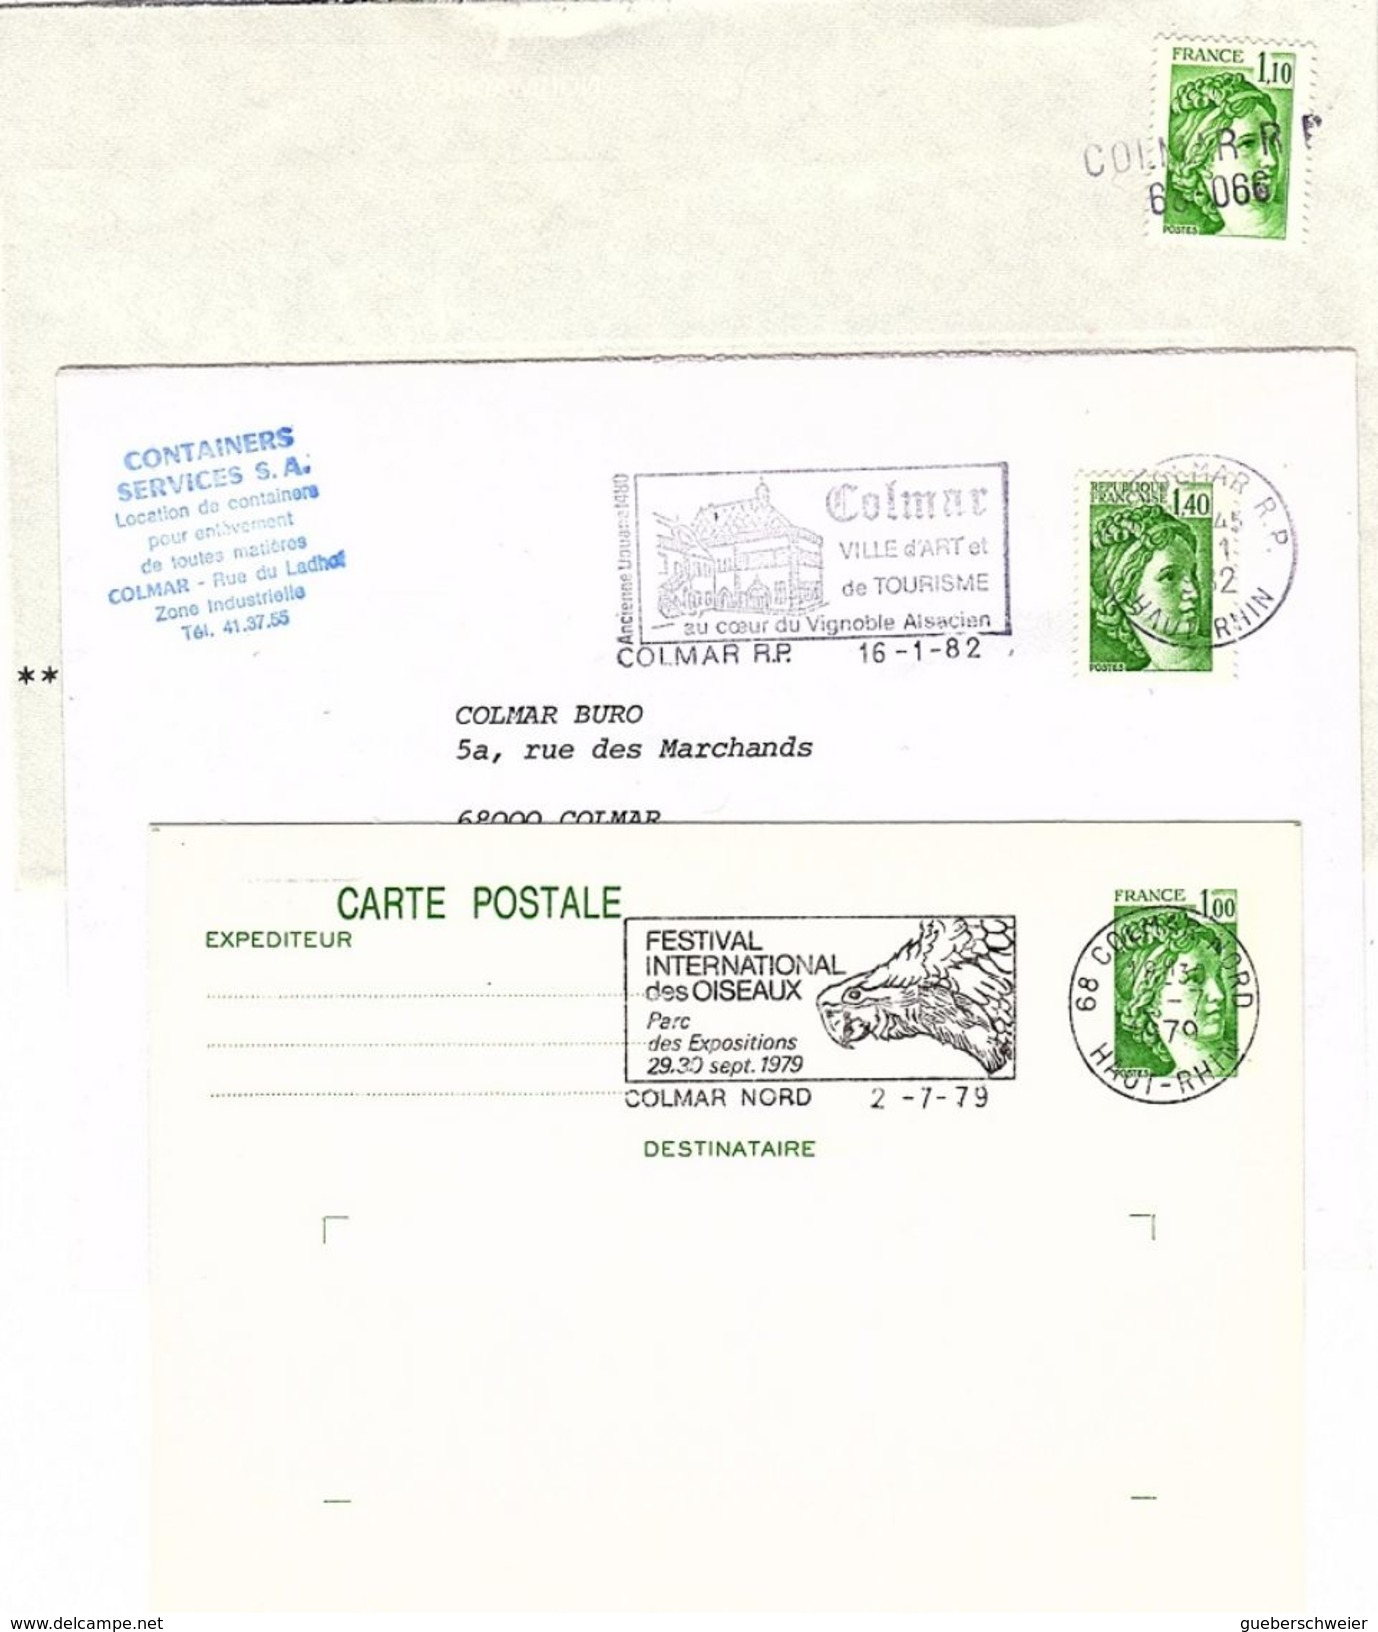 FR-SAB-L1 - FRANCE Lot de 29 lettres + 7 entiers postaux type Sabine de Gandon dont roulettes